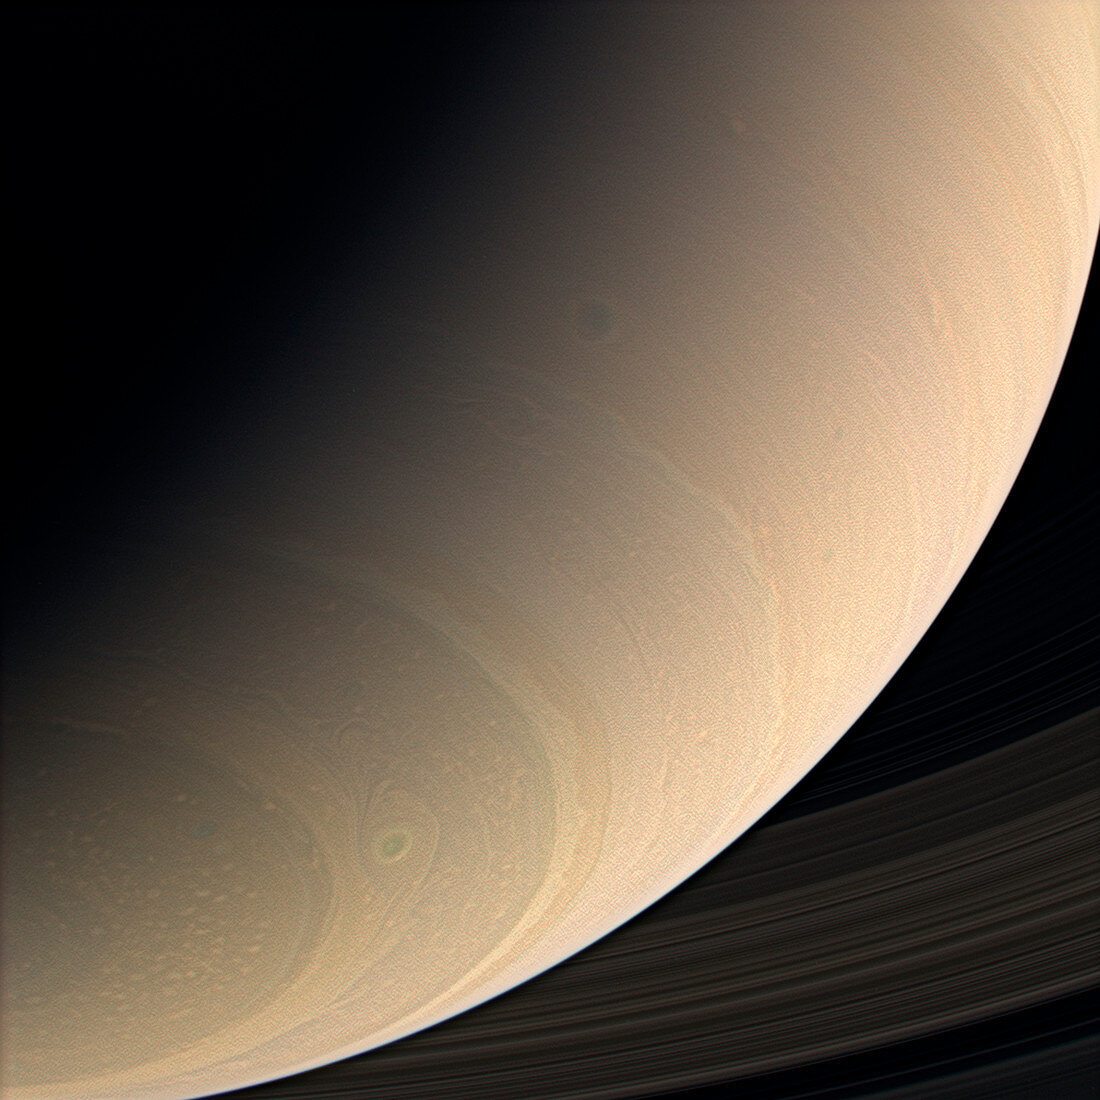 Saturn,Cassini image